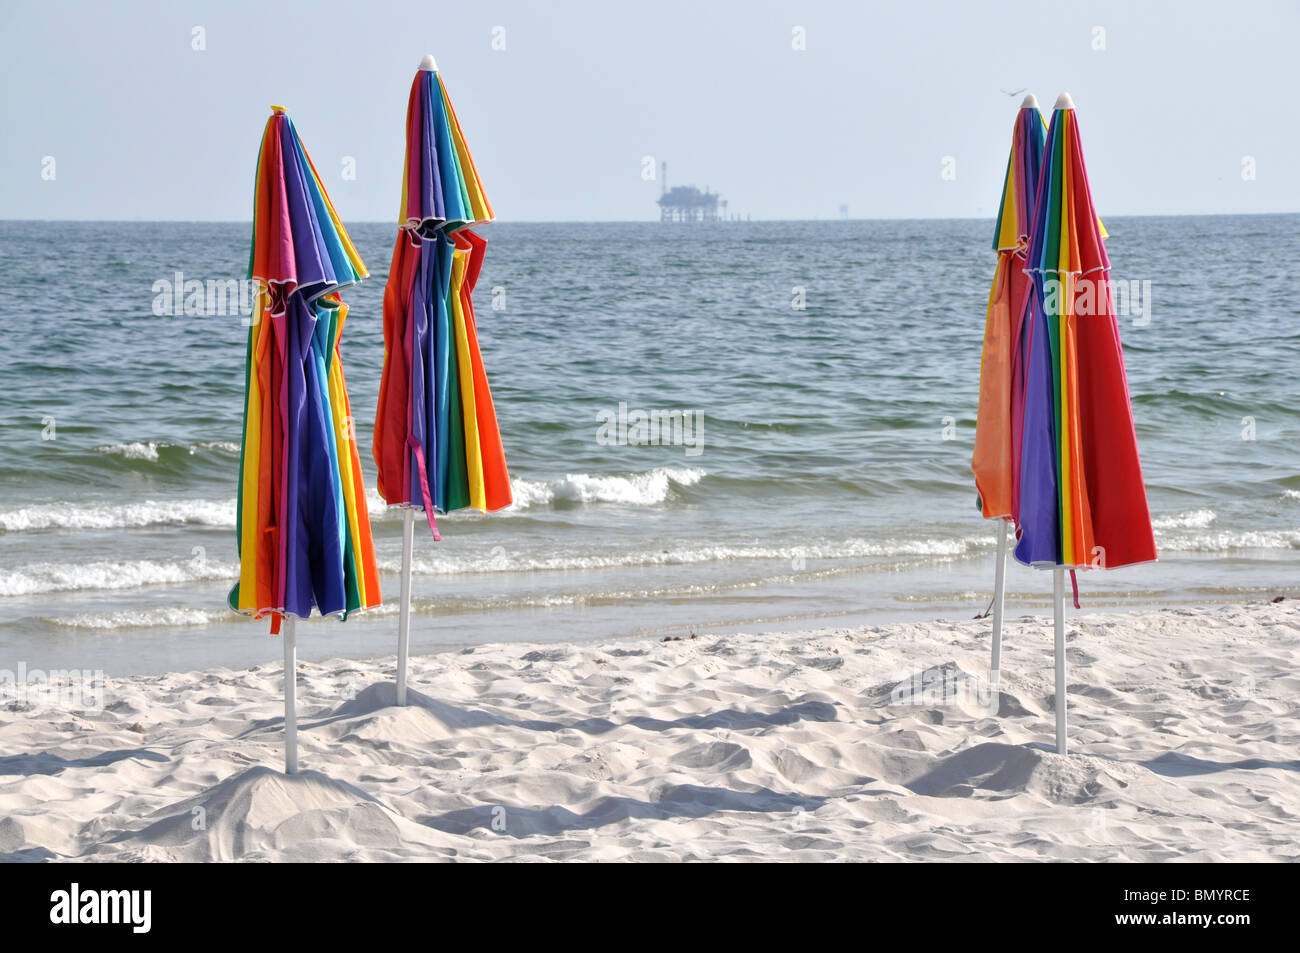 Abbandonata la spiaggia con ombrelloni chiusi. Off shore oil rig in background. Foto Stock